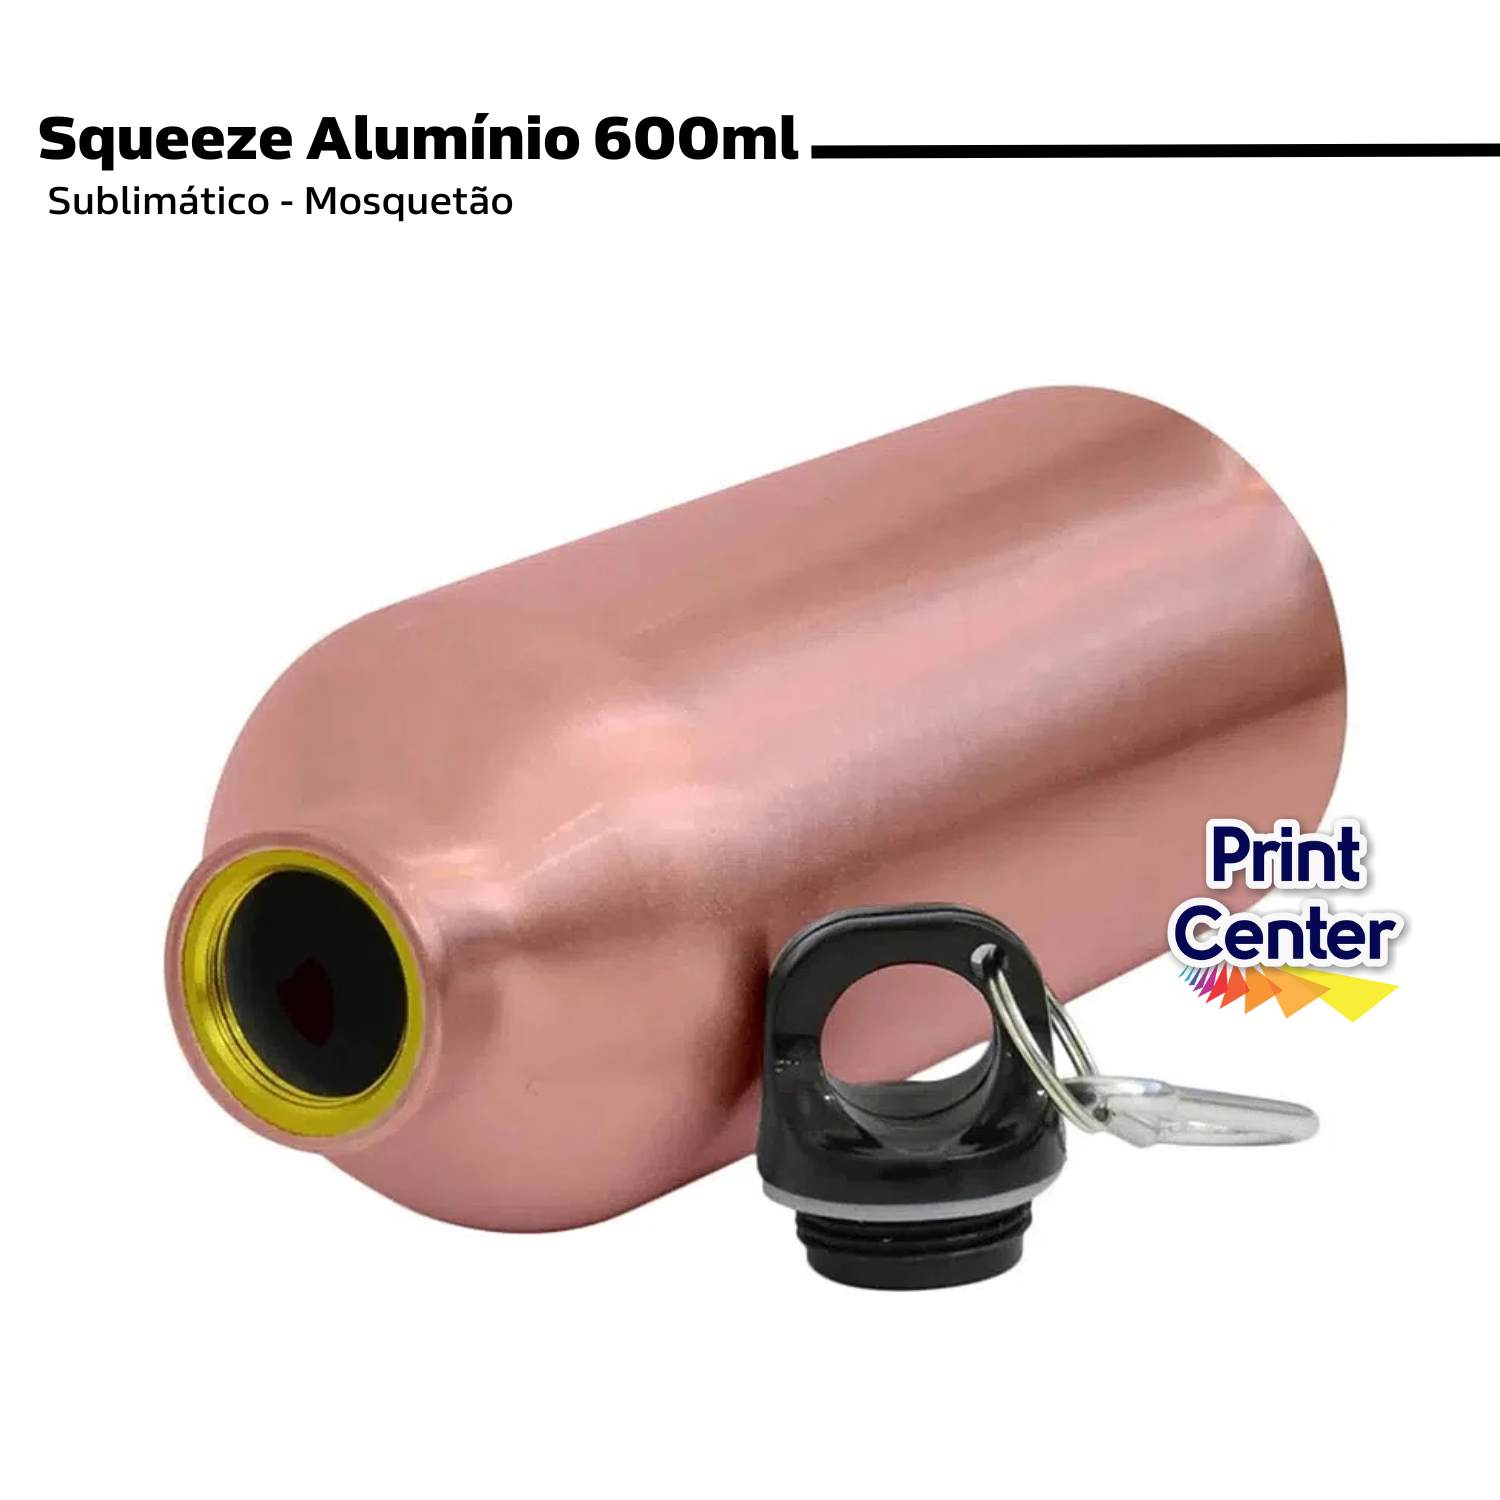 Squeeze Alumínio p/ Sublimação 600ml - Mosquetão